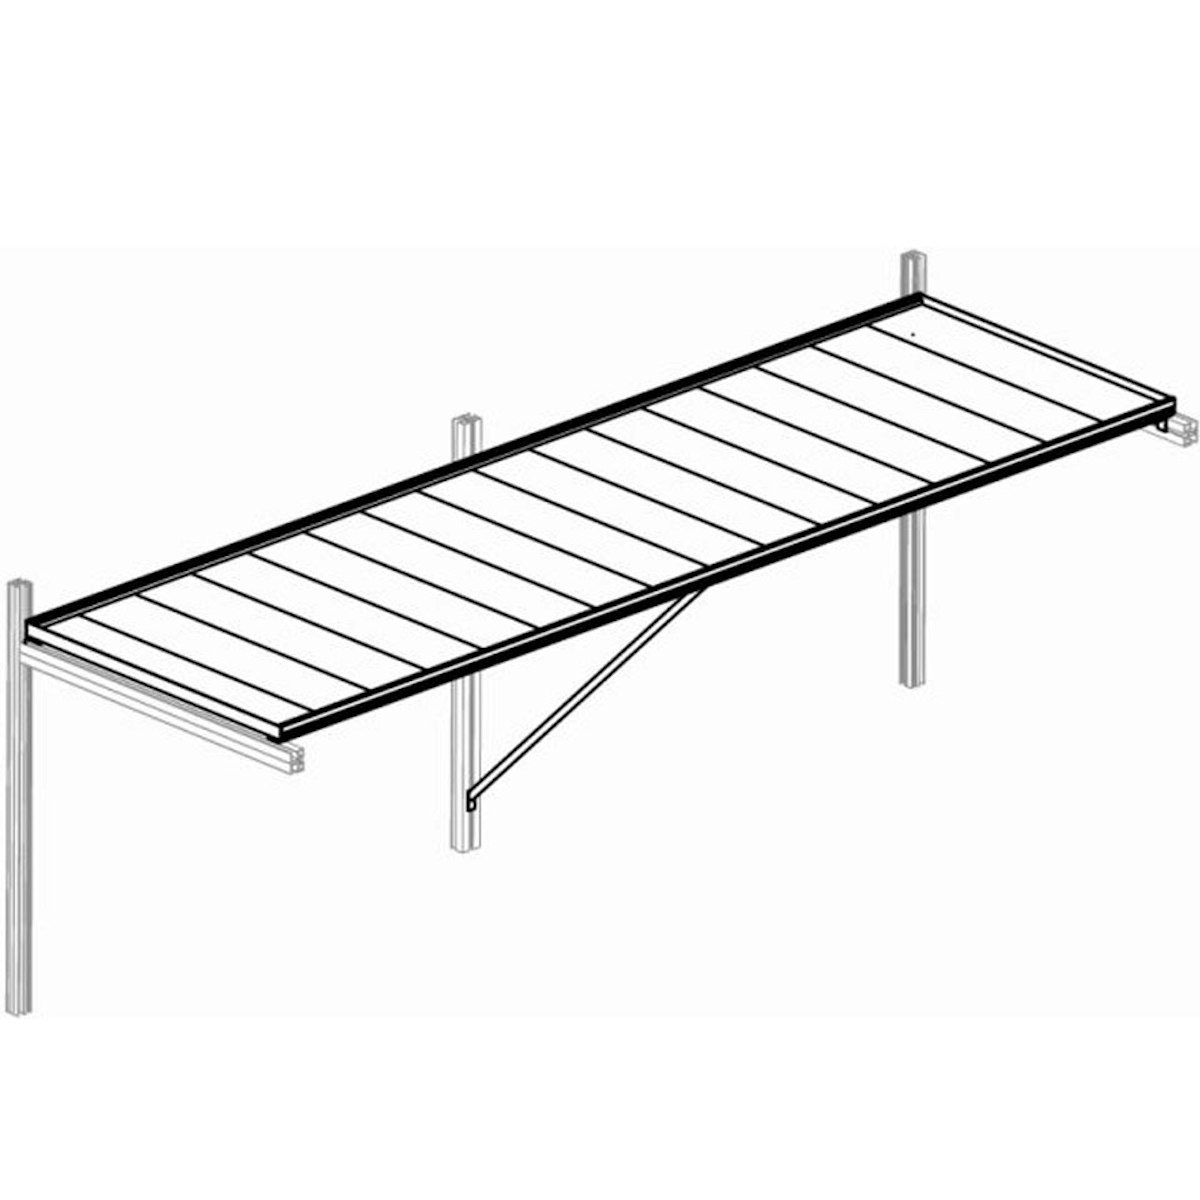 Tischgestell für KGT Gewächshäuser-Linea II- von KGT